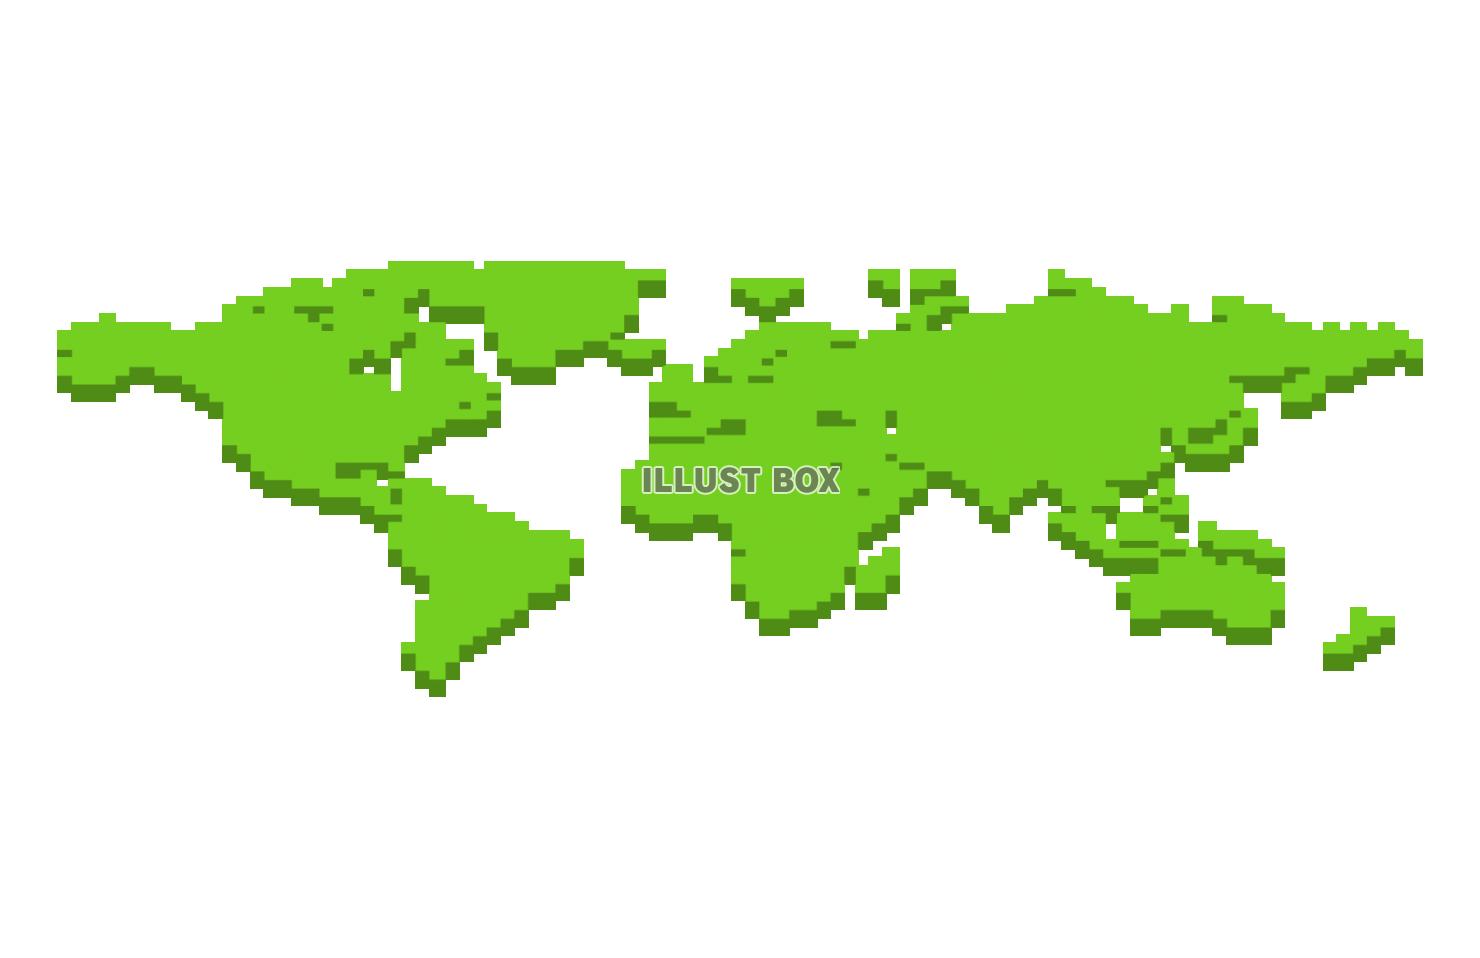 立体的なドット絵風の世界地図